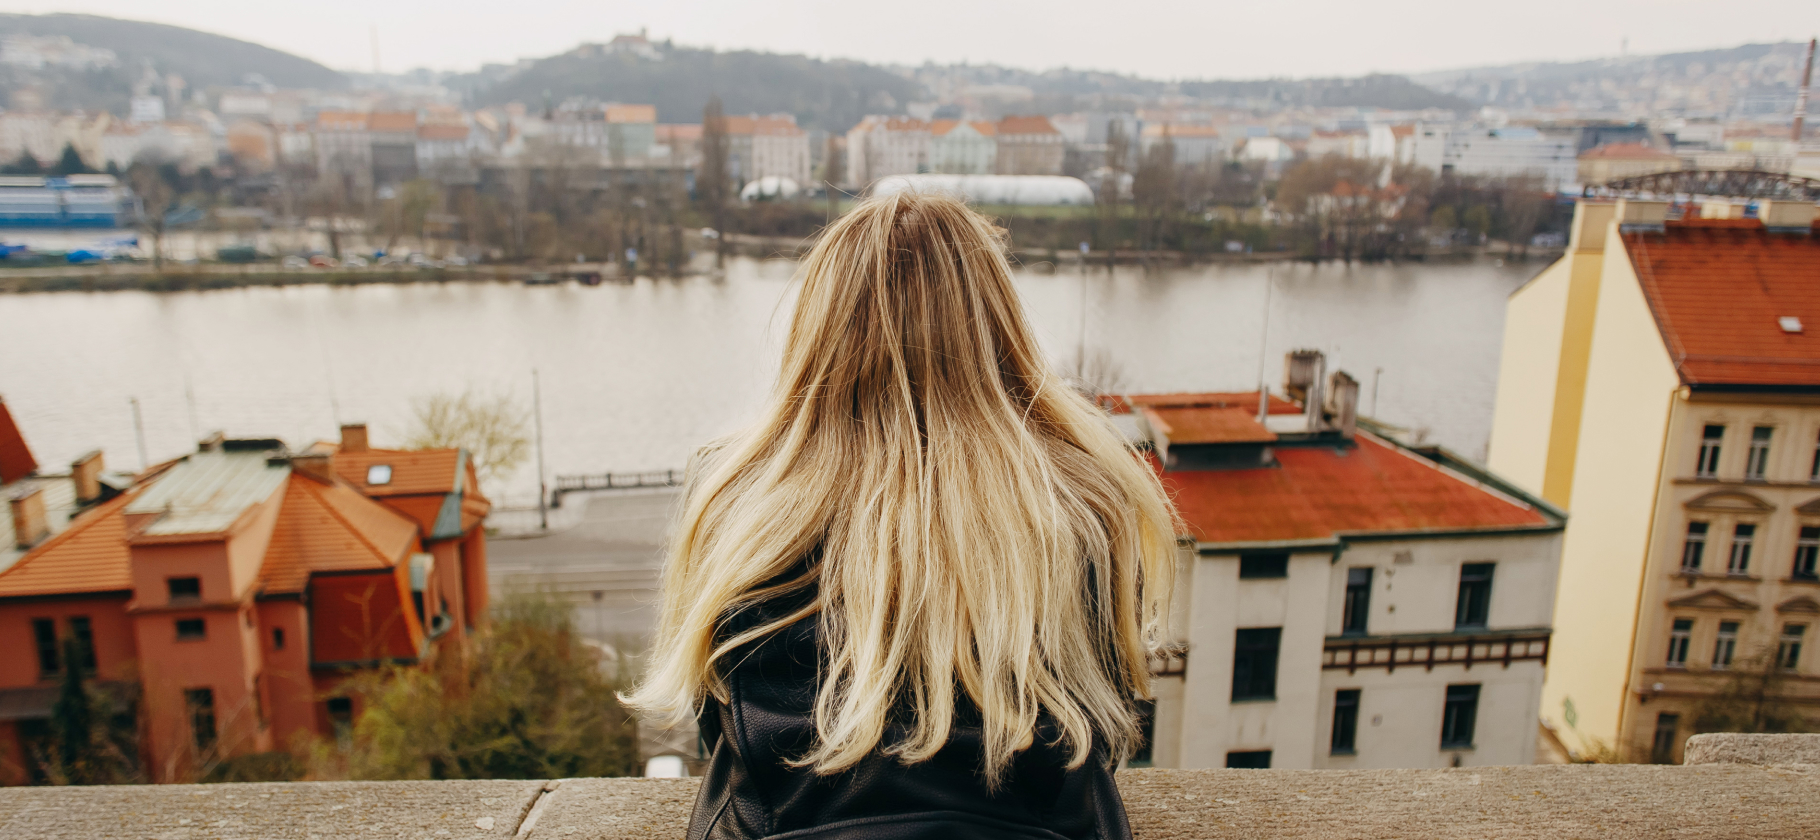 «Люди здесь открыты и вежливы, уважают личное пространство»: как я живу в Чехии